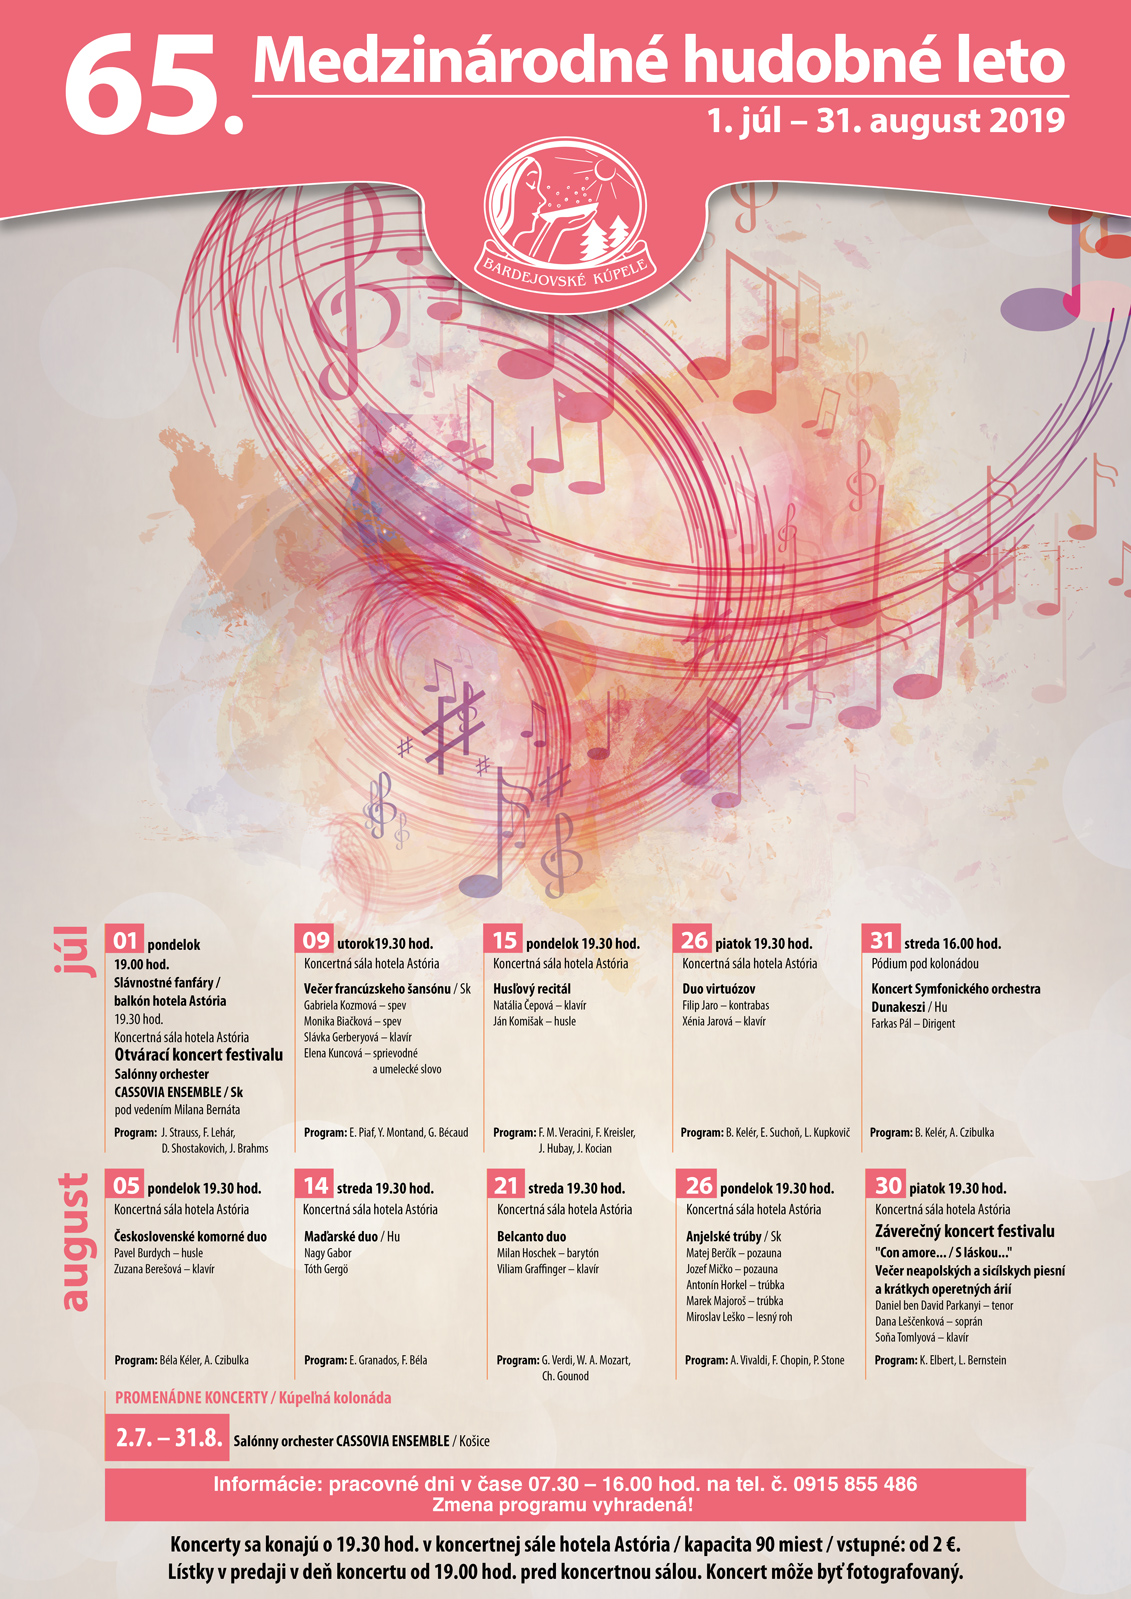 65. Medzinárodné hudobné leto 2019 Bardejov